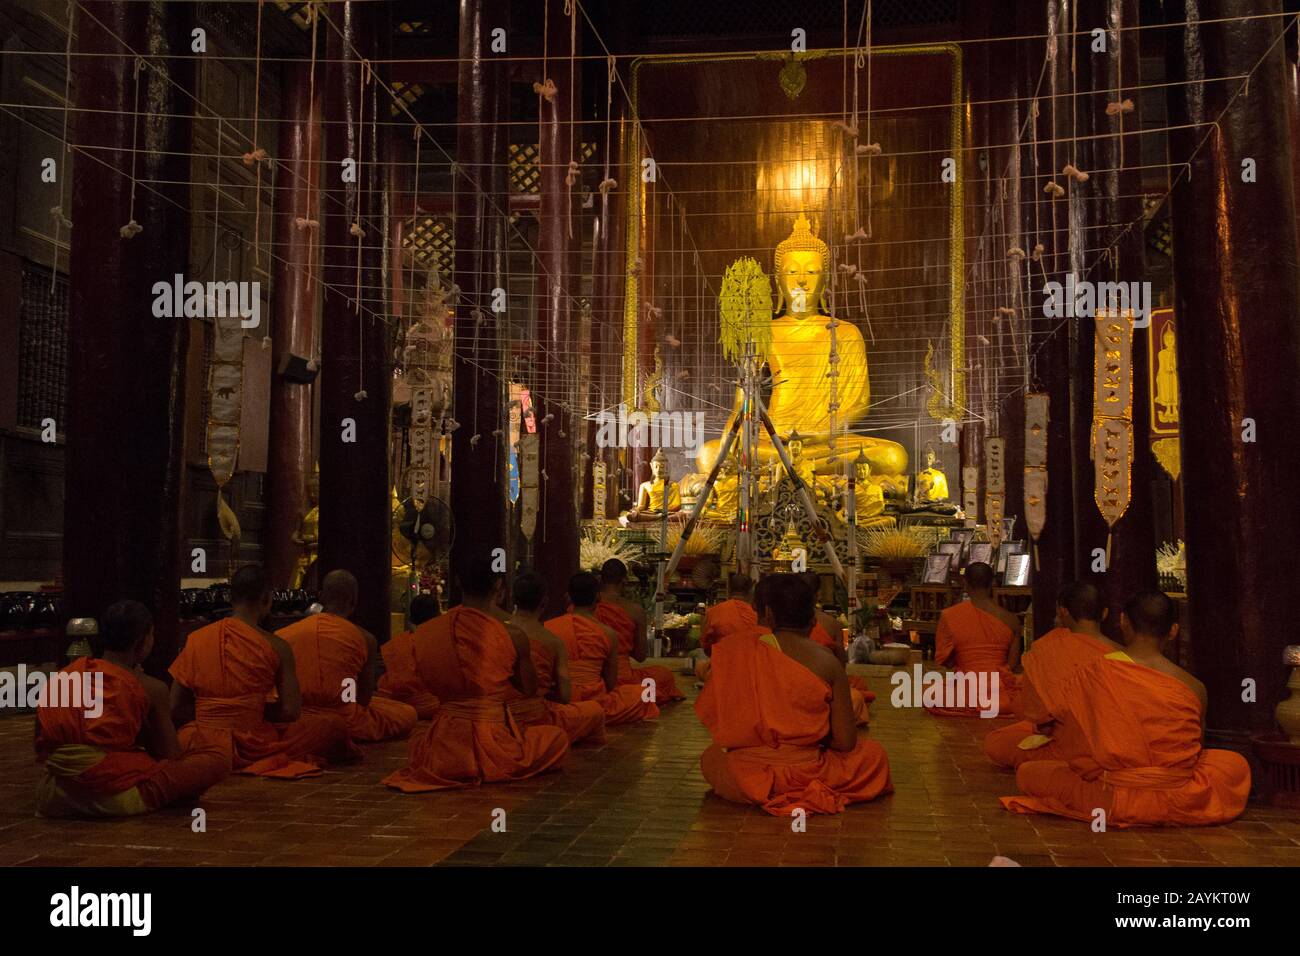 Cerimonia notturna nel tempio buddista di Chiang mai, Thailandia. Foto Stock